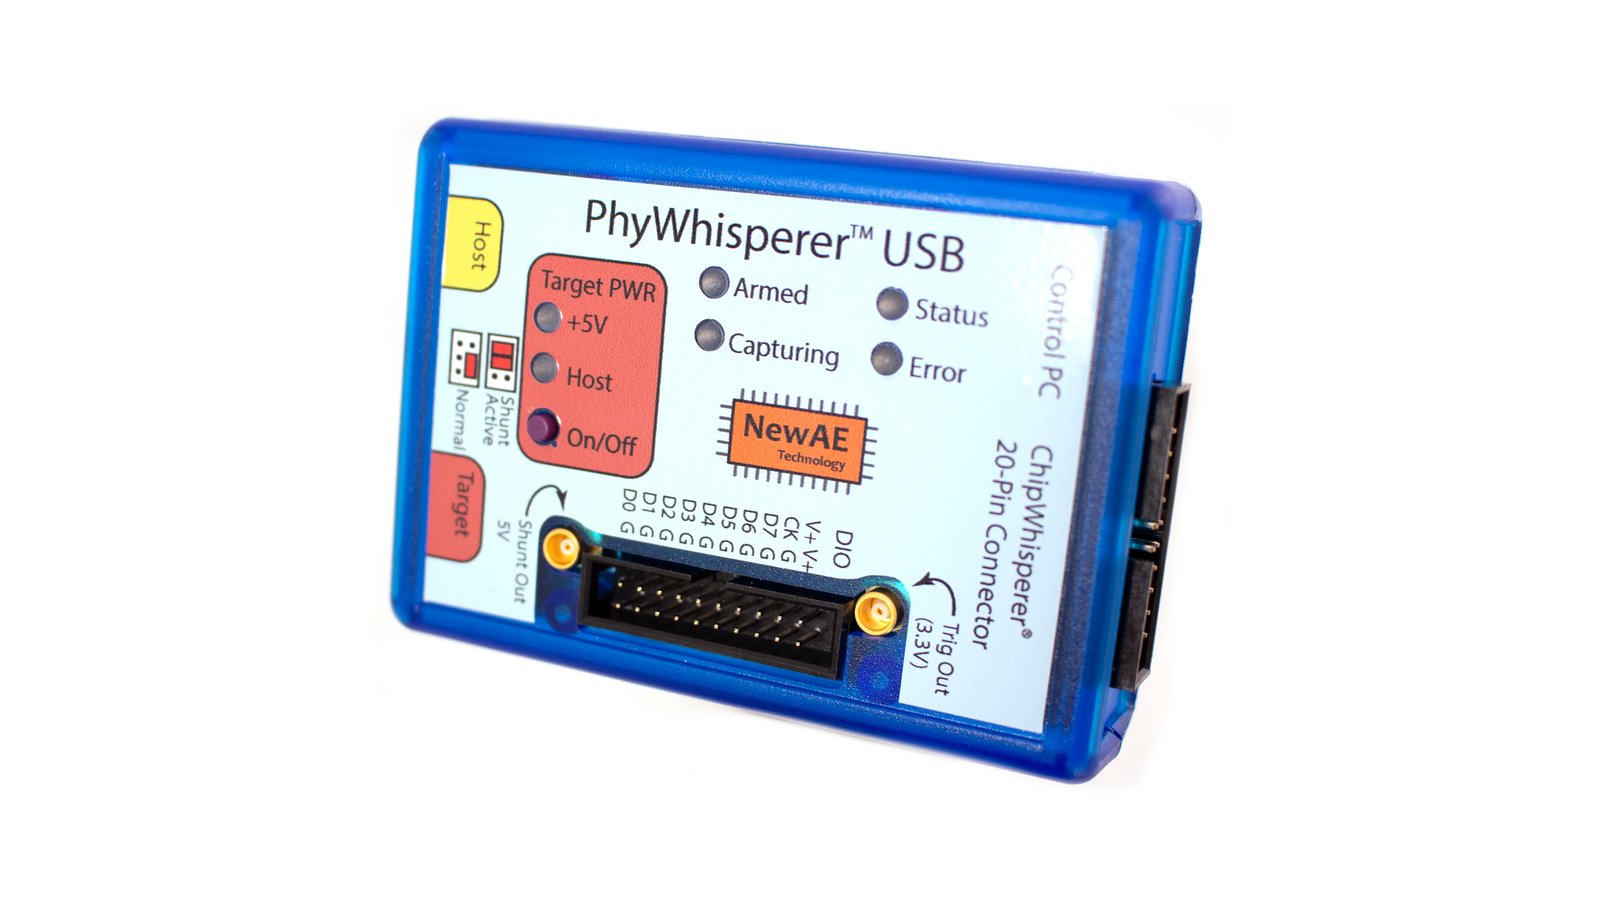 PhyWhisperer-USB